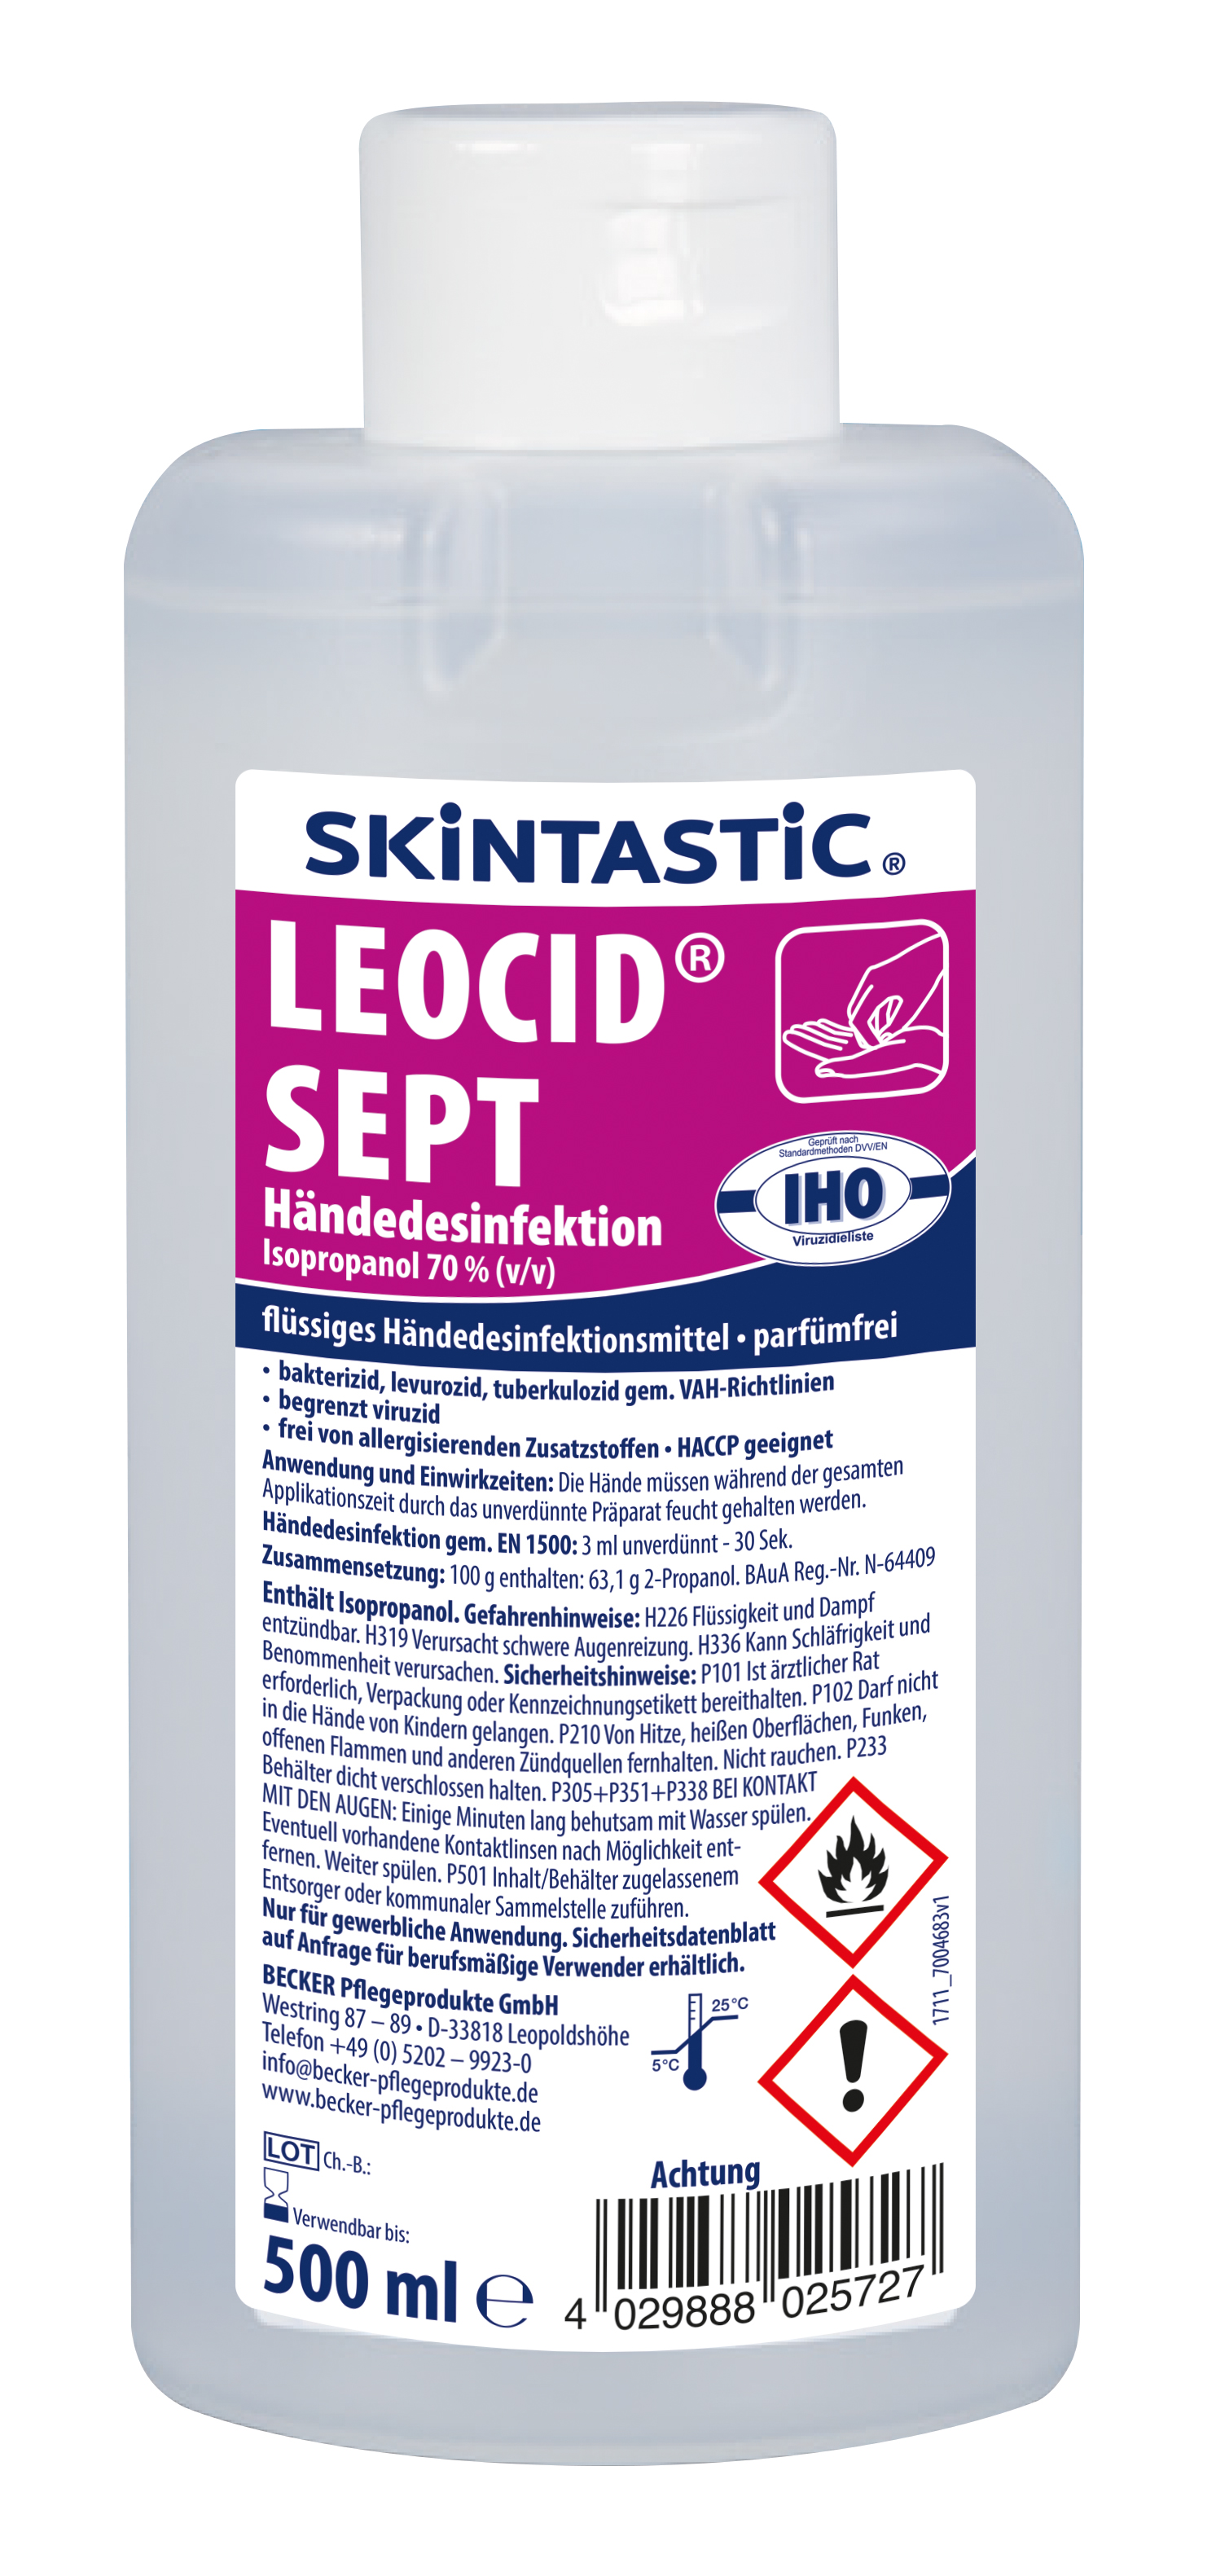 LEOCID Sept / 500ml / Hände- und Hautdesinfektionsmittel / 20 Fla im Krt.